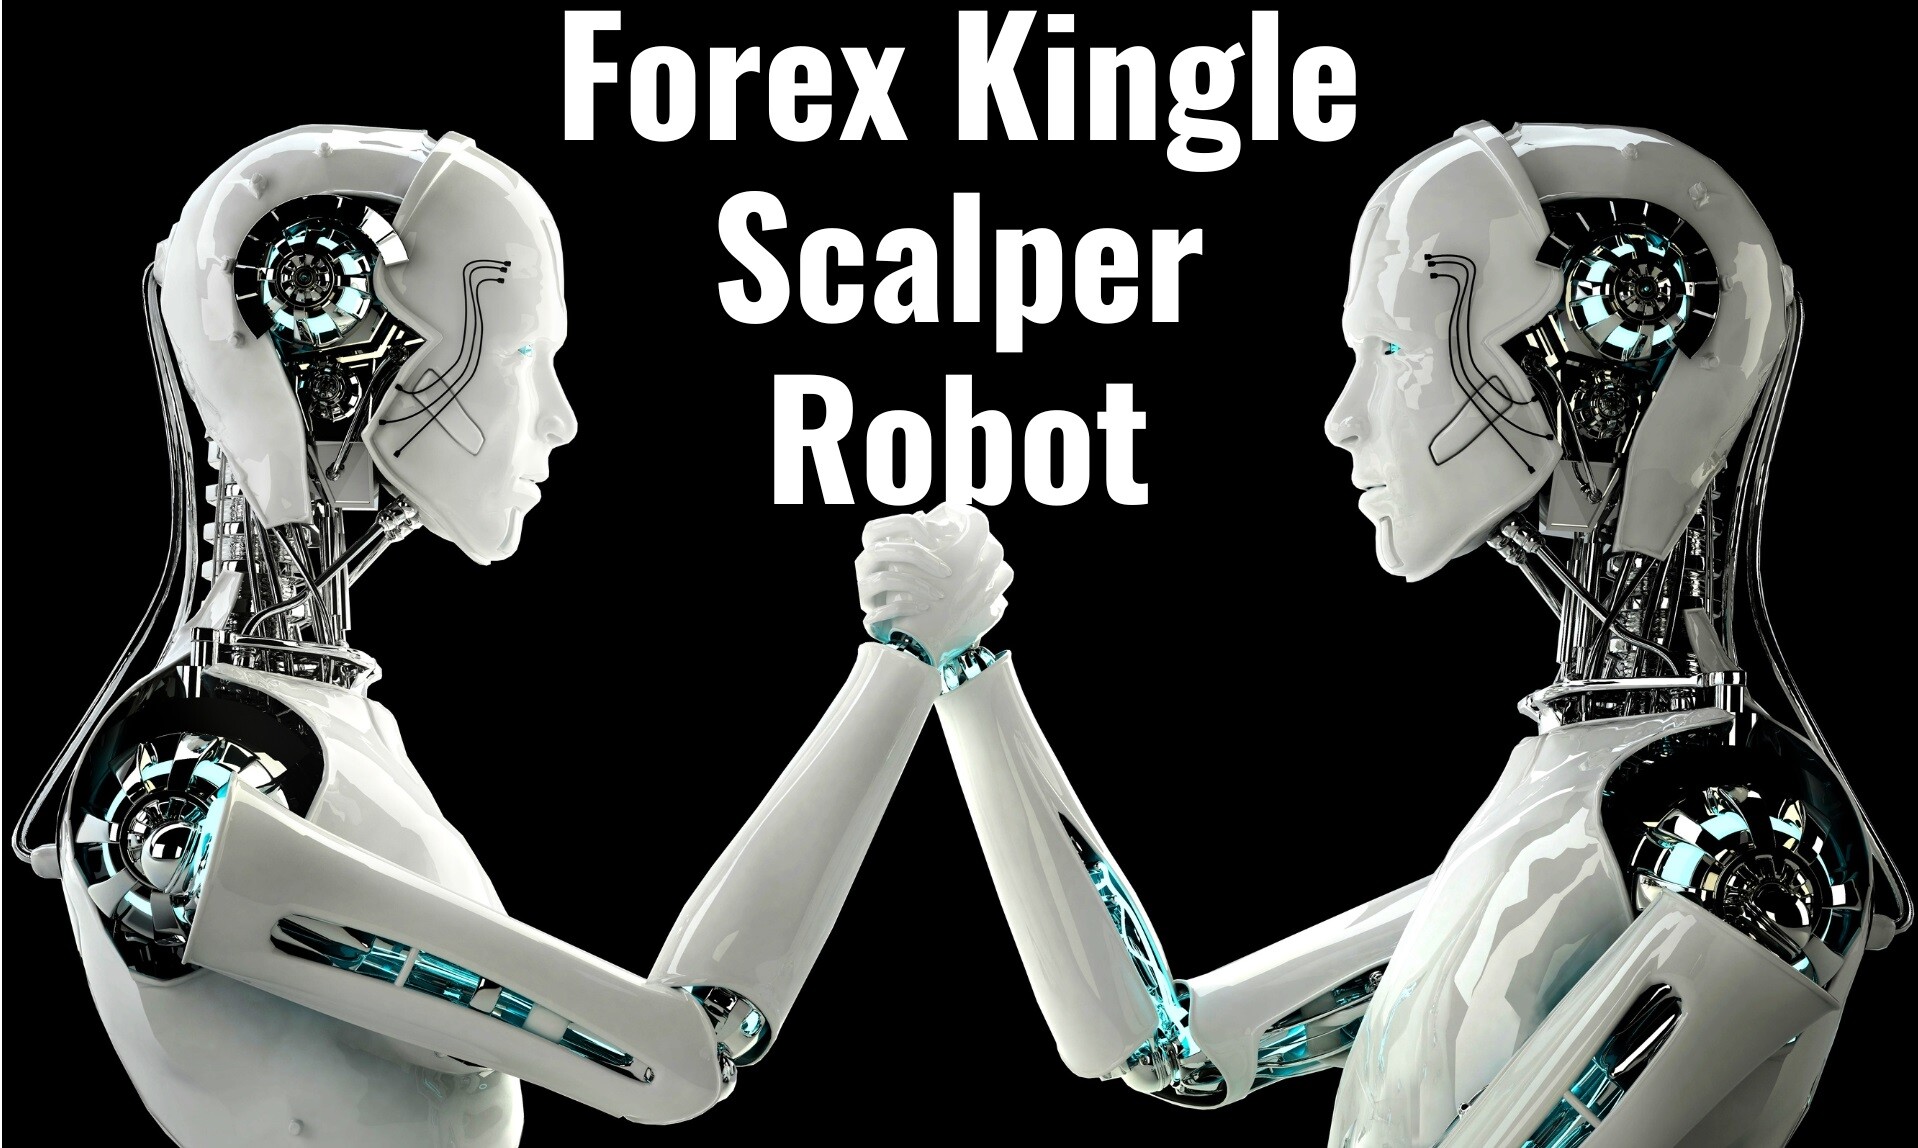 Forex Kingle Scalper Robot